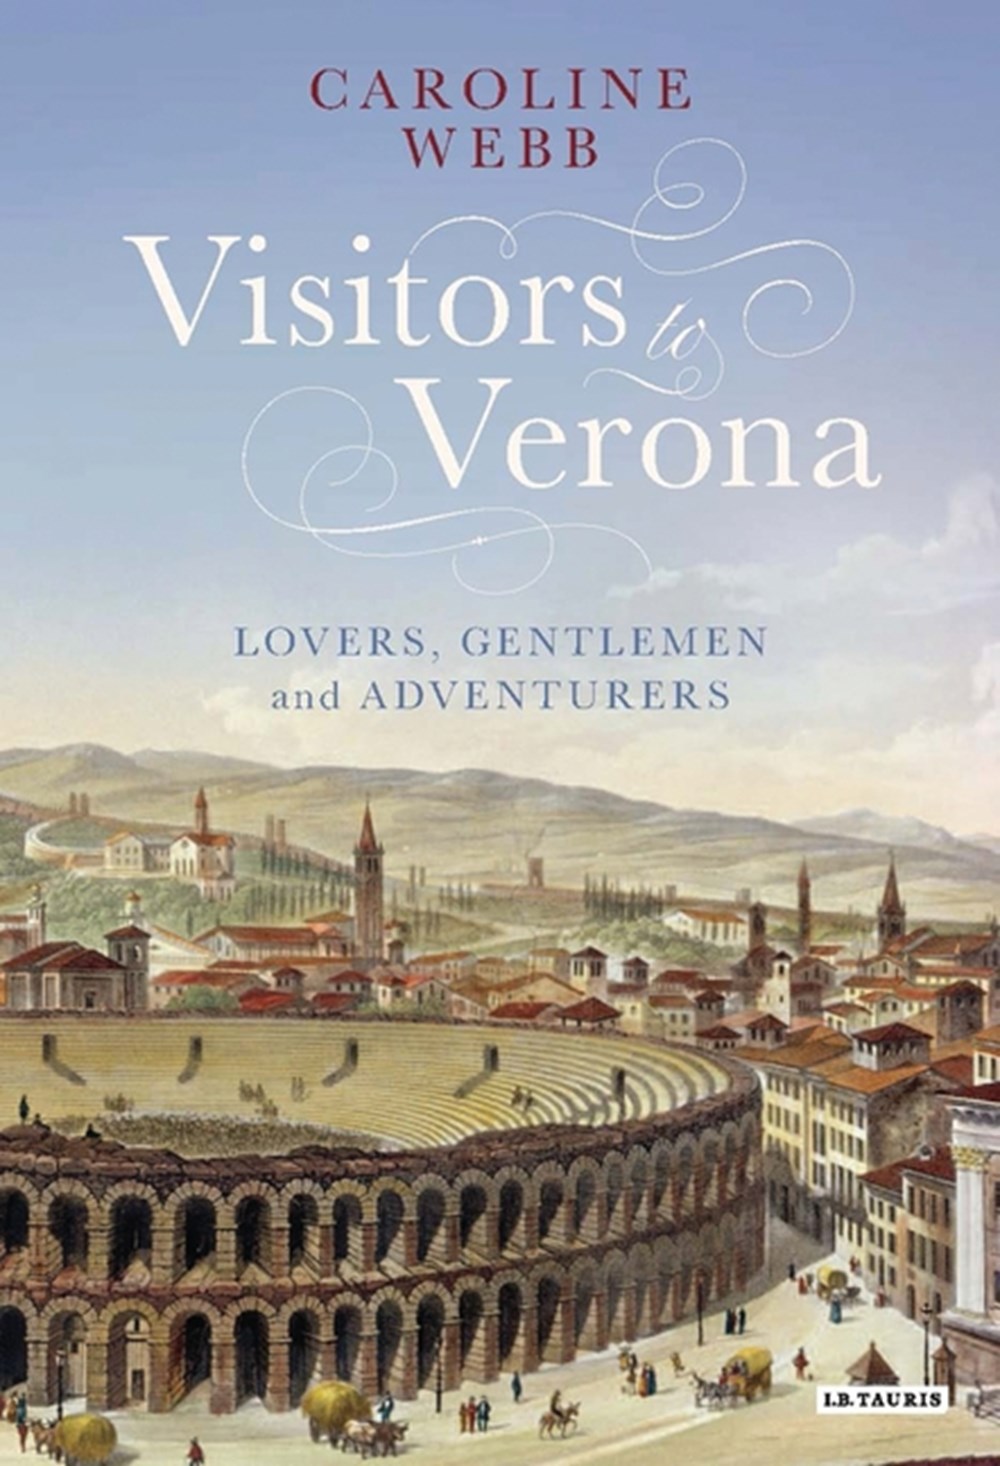  Visitors to Verona: Lovers, Gentlemen and Adventurers